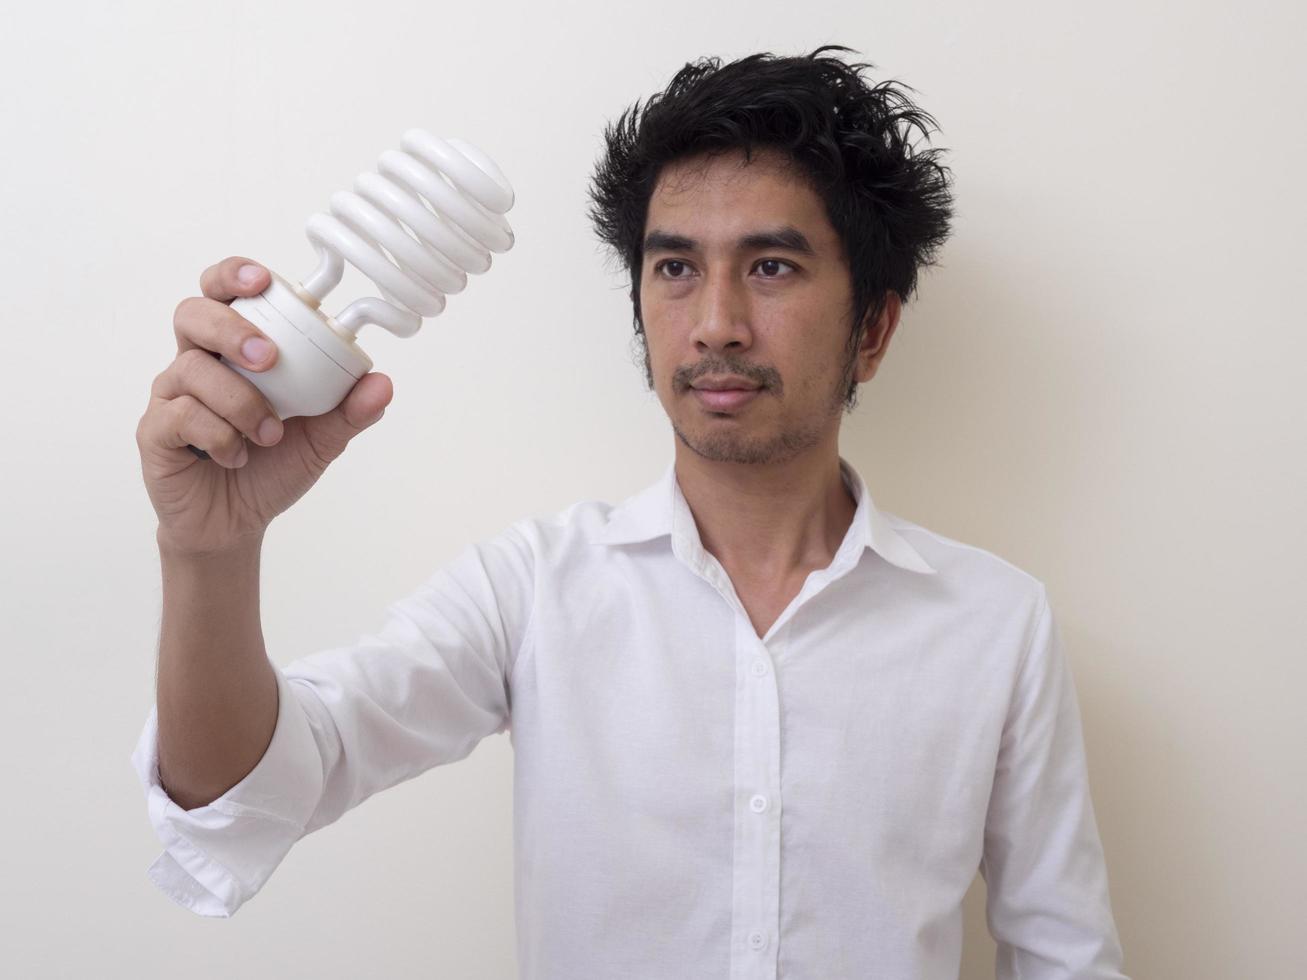 homme tenant une ampoule à économie d'énergie pour lampe photo